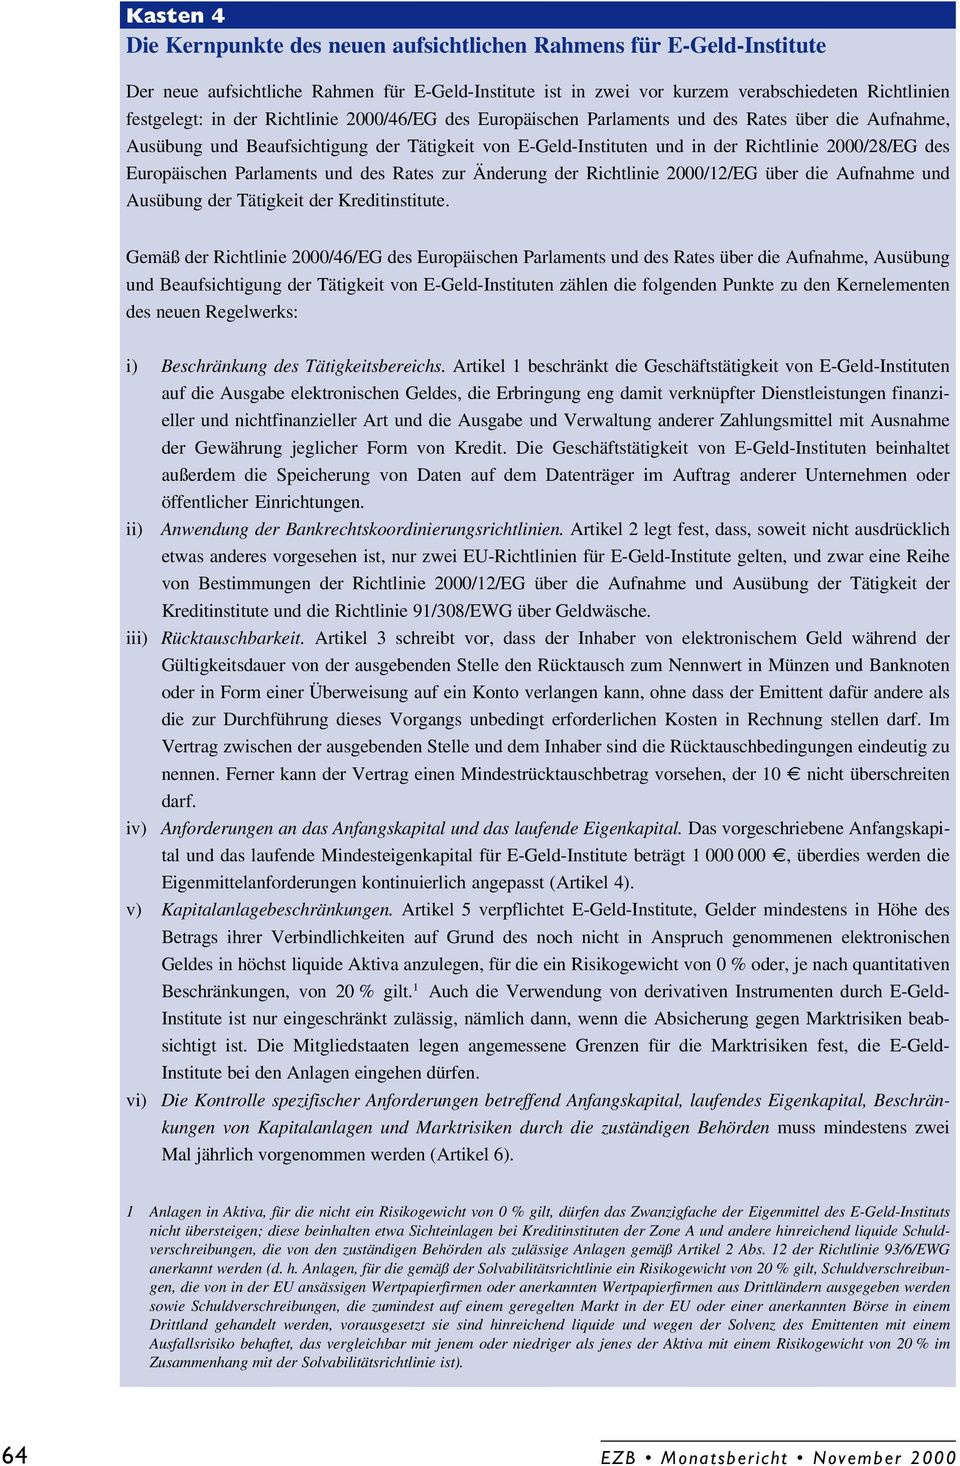 Parlaments und des Rates zur Änderung der Richtlinie 2000/12/EG über die Aufnahme und Ausübung der Tätigkeit der Kreditinstitute.